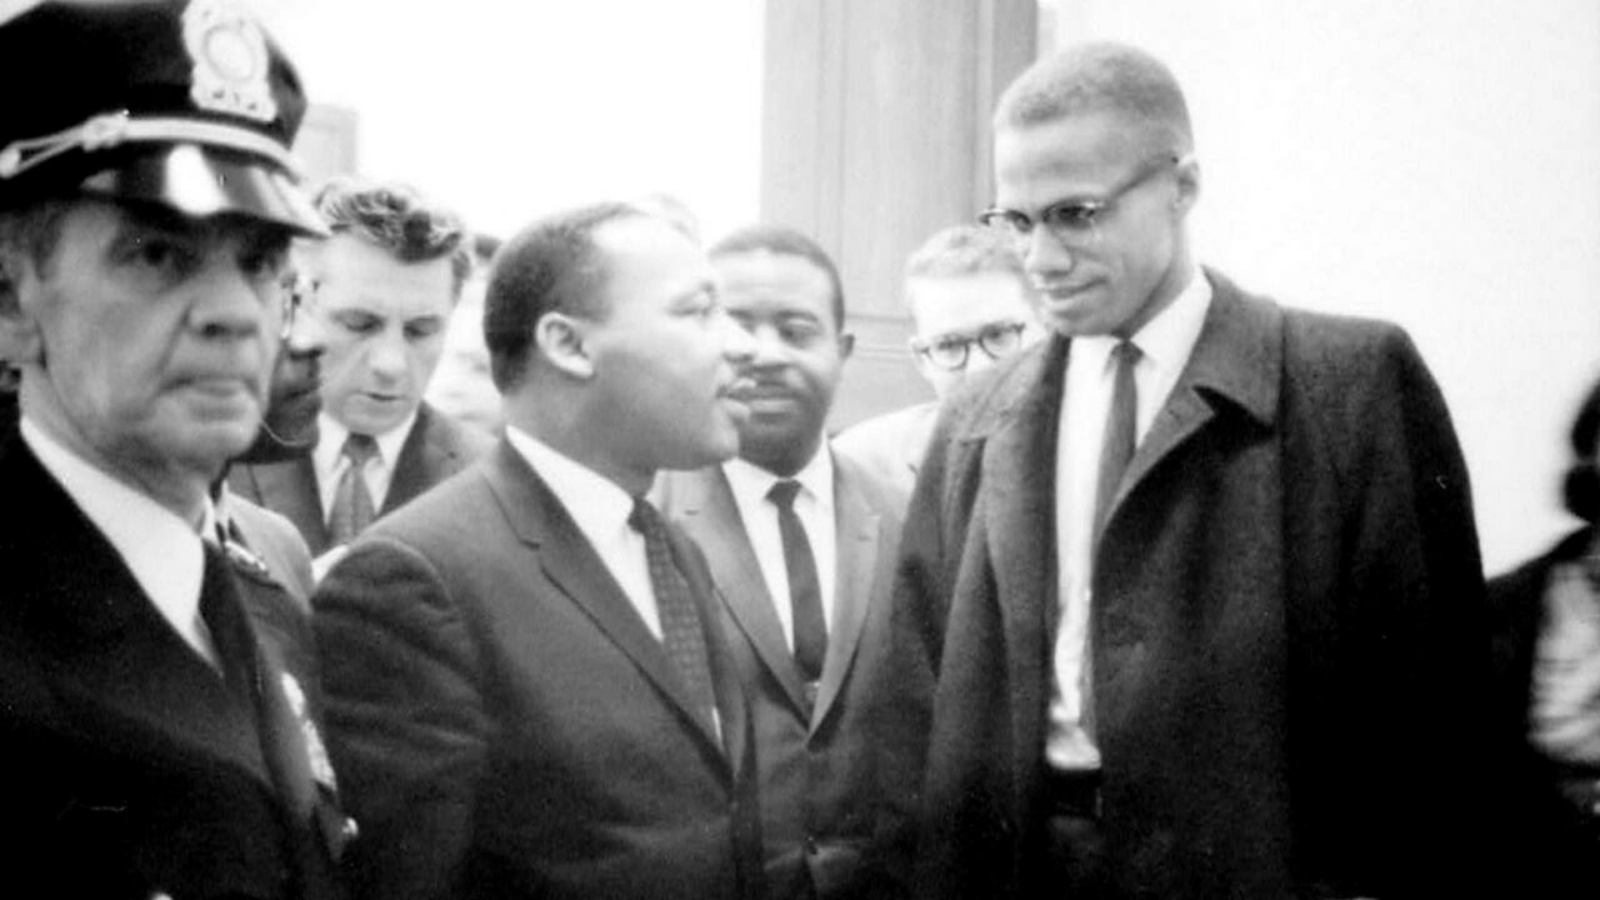 صورة منشورة من مكتبة الكونغرس تُظهر مارتن لوثر كينغ الابن (إلى اليسار) وزميله من قادة الحقوق المدنية مالكولم إكس في عام 1964.